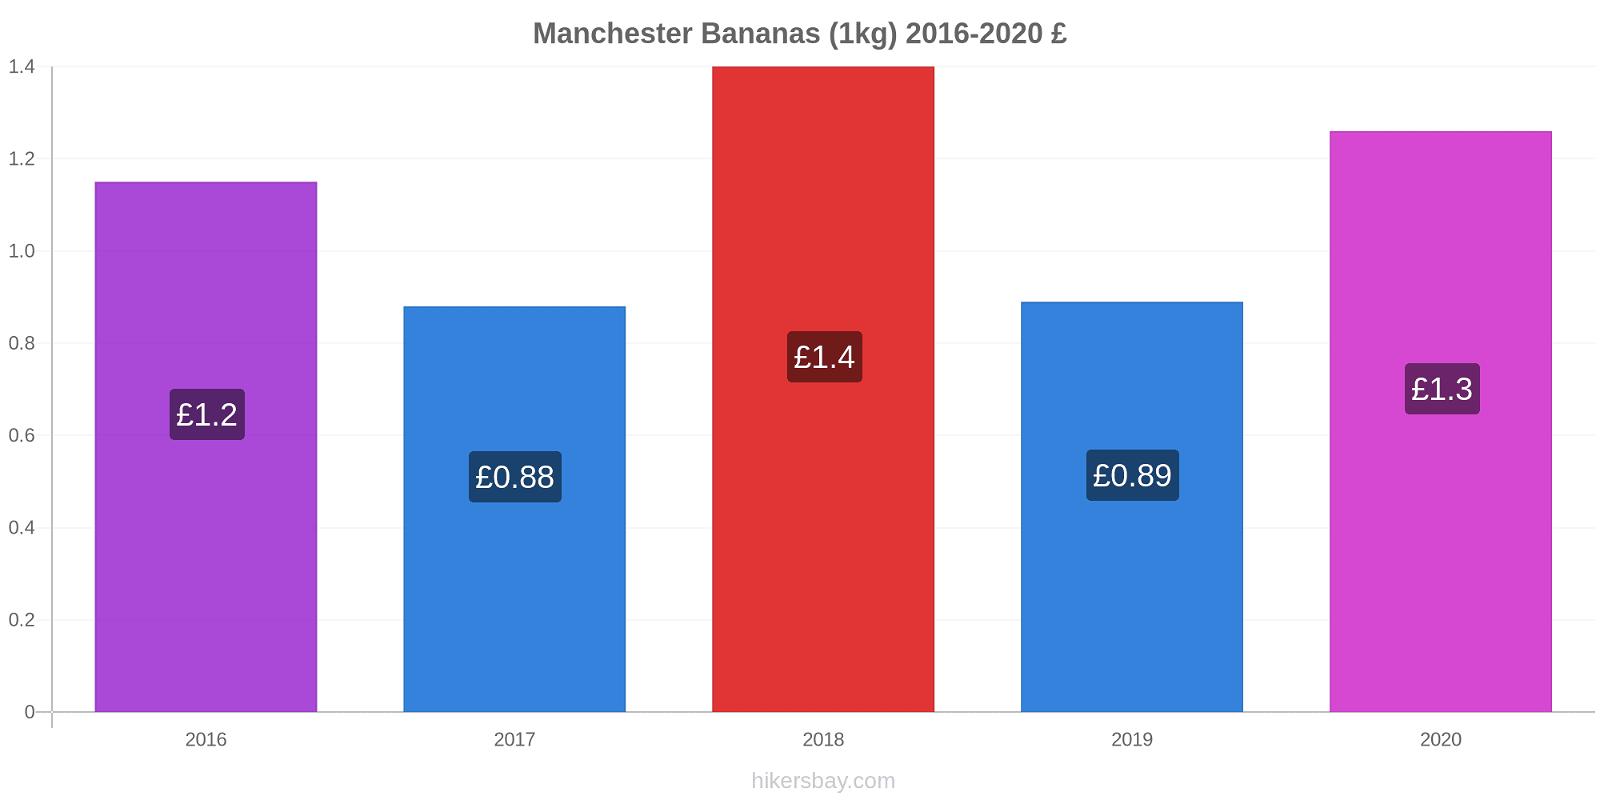 Manchester variação de preço Banana (1kg) hikersbay.com